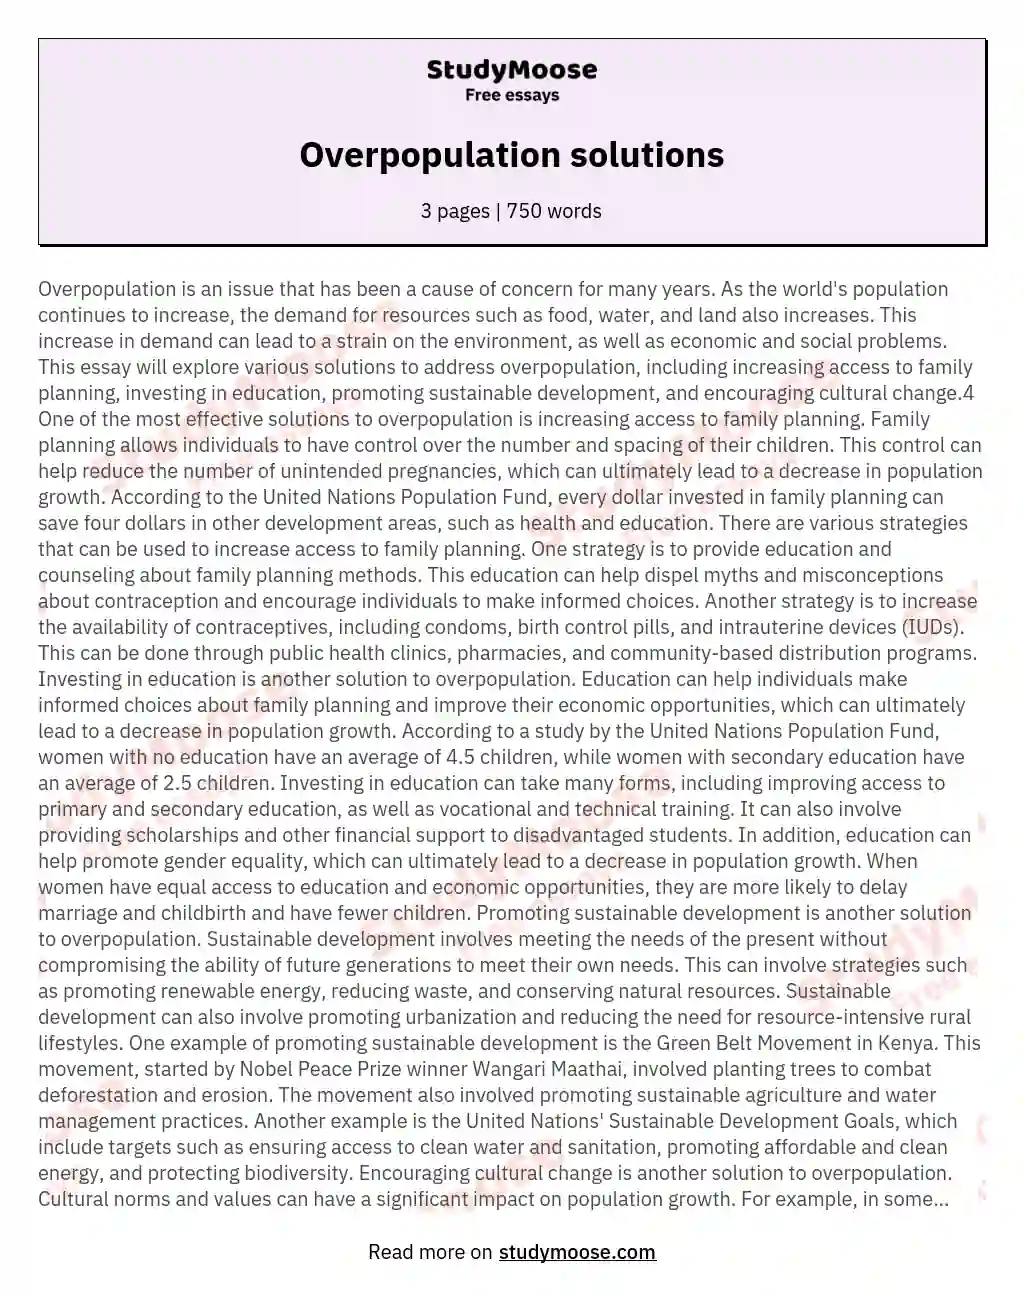 Overpopulation solutions essay